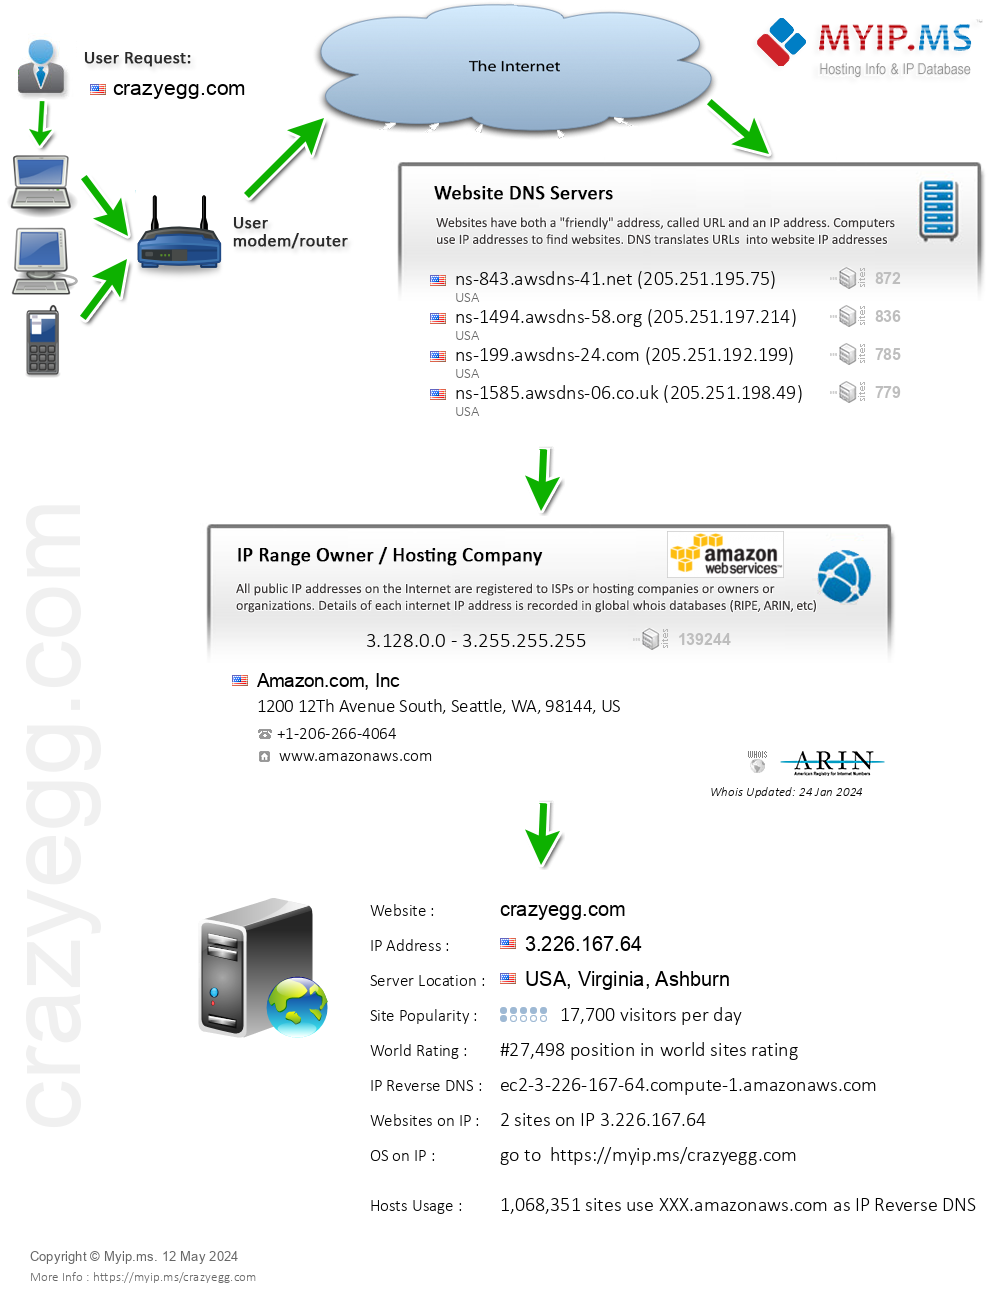 Crazyegg.com - Website Hosting Visual IP Diagram